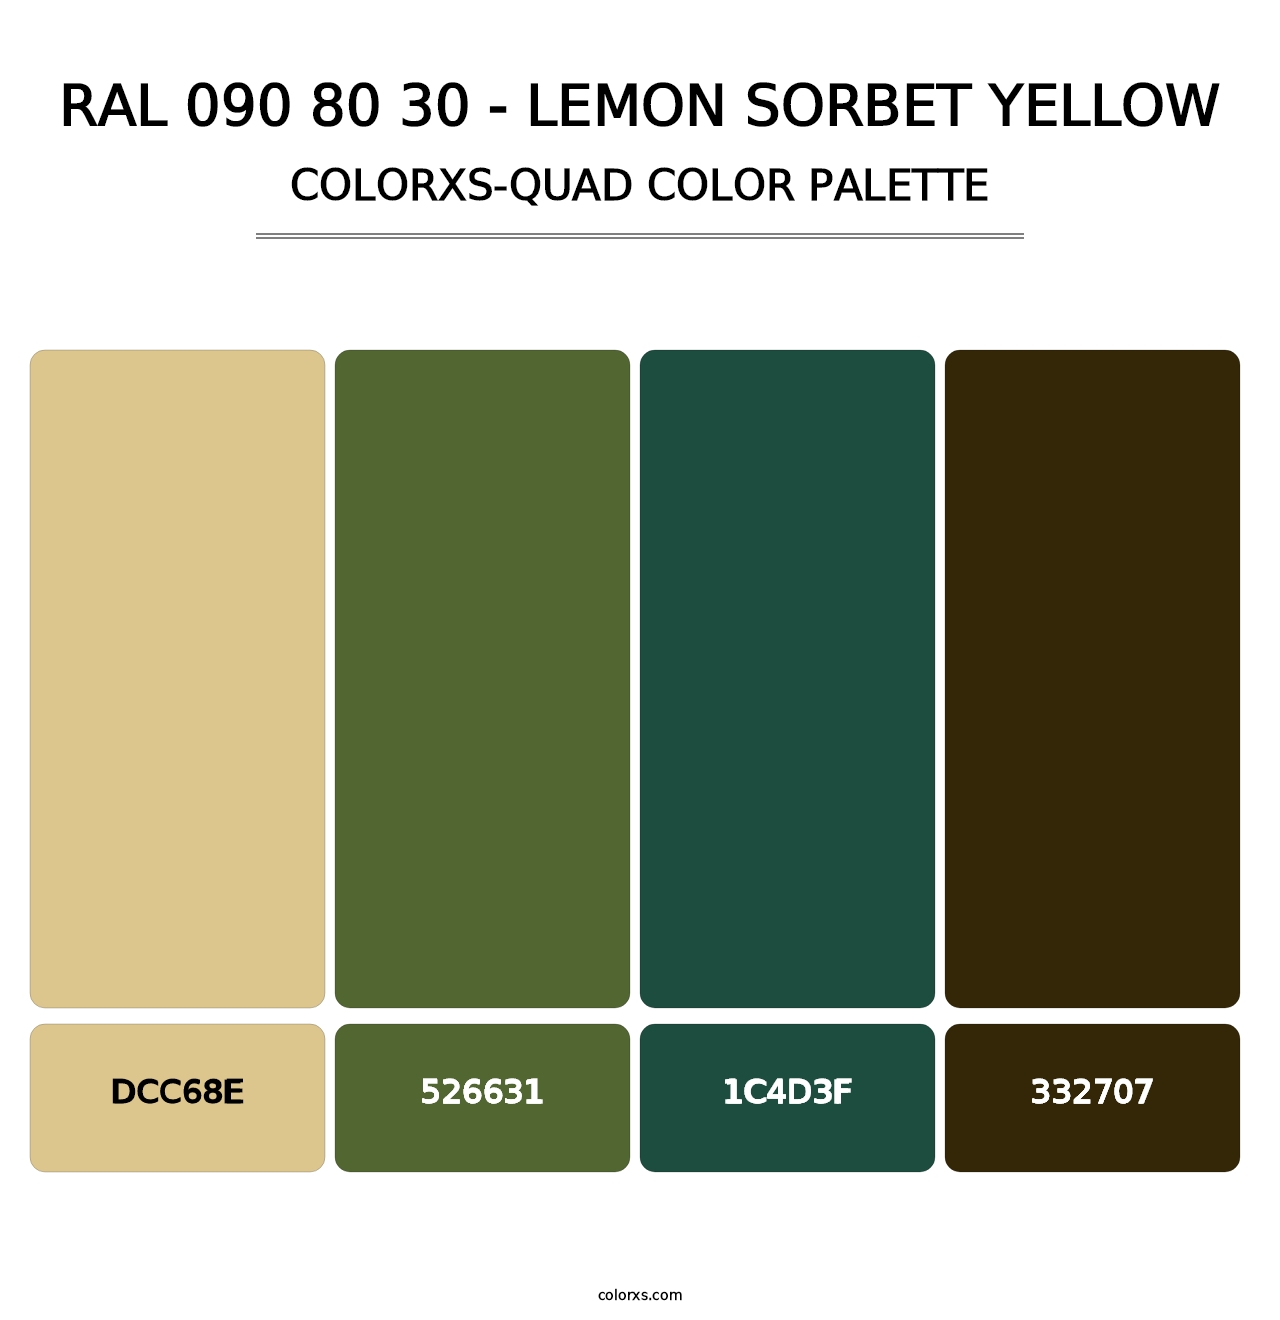 RAL 090 80 30 - Lemon Sorbet Yellow - Colorxs Quad Palette